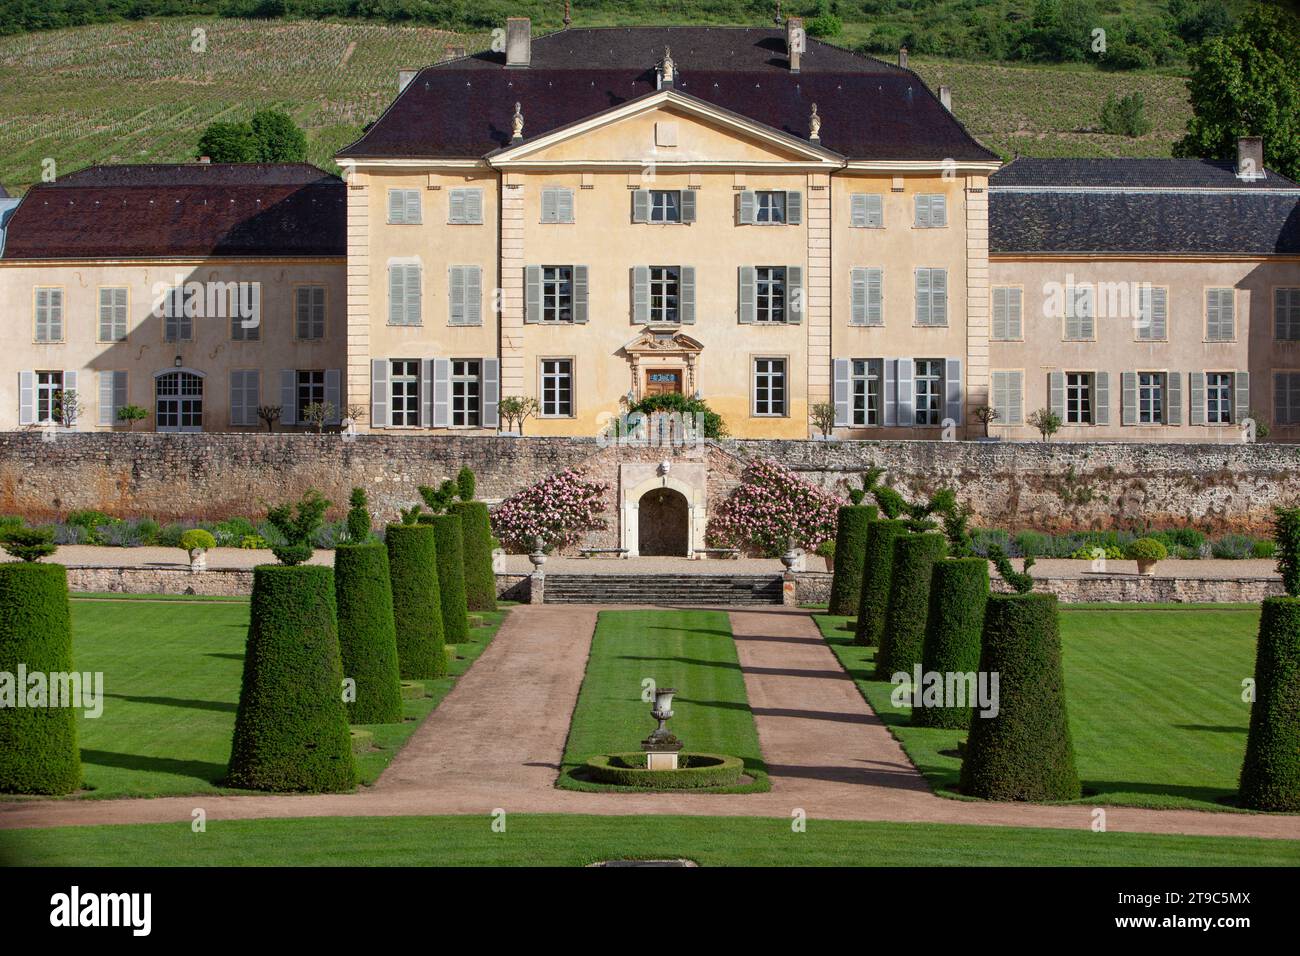 France, Rhone, Beaujolais région, la Chaize castle, Odenas Stock Photo